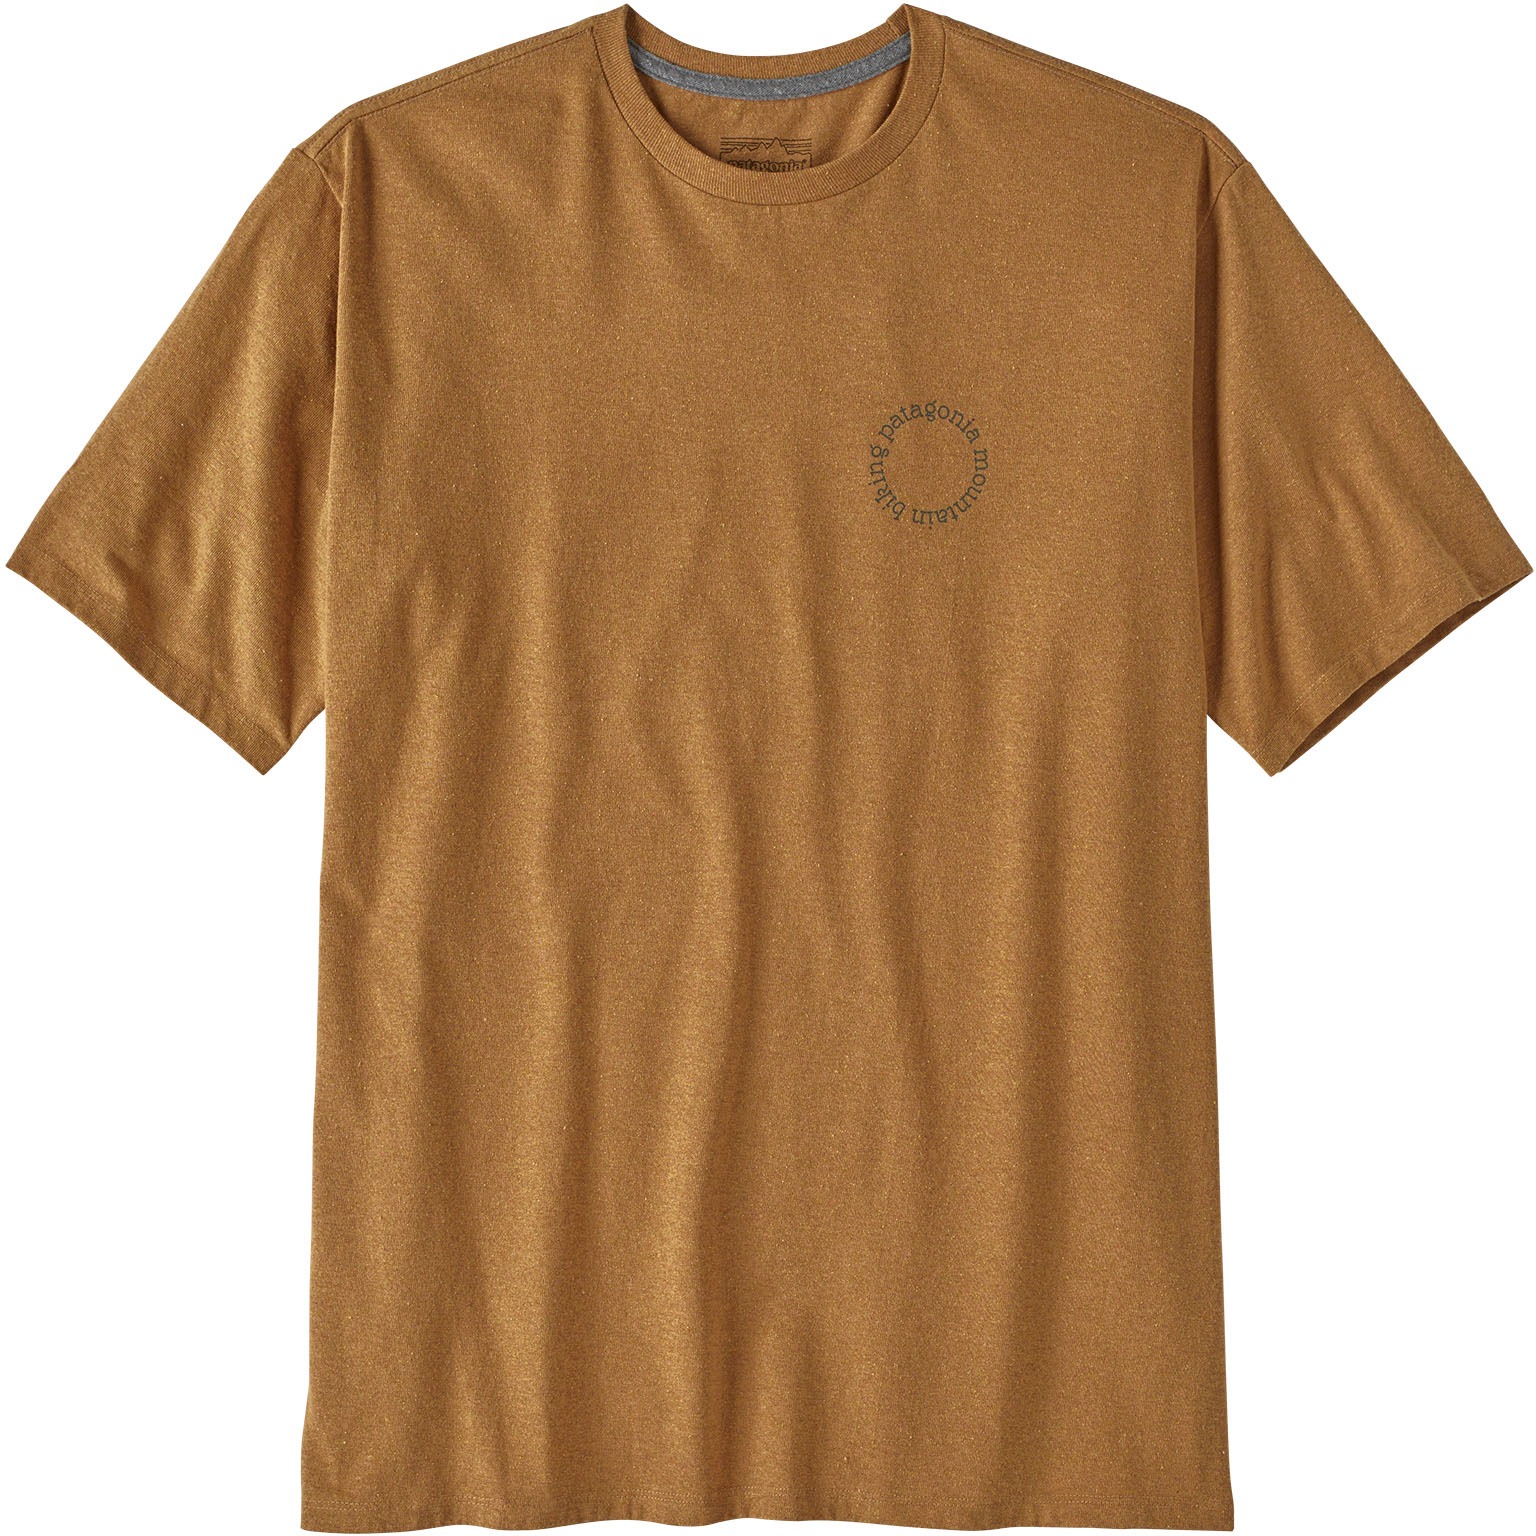 Produktbild von Patagonia Spoke Stencil Responsibili-Tee T-Shirt Herren - Golden Caramel